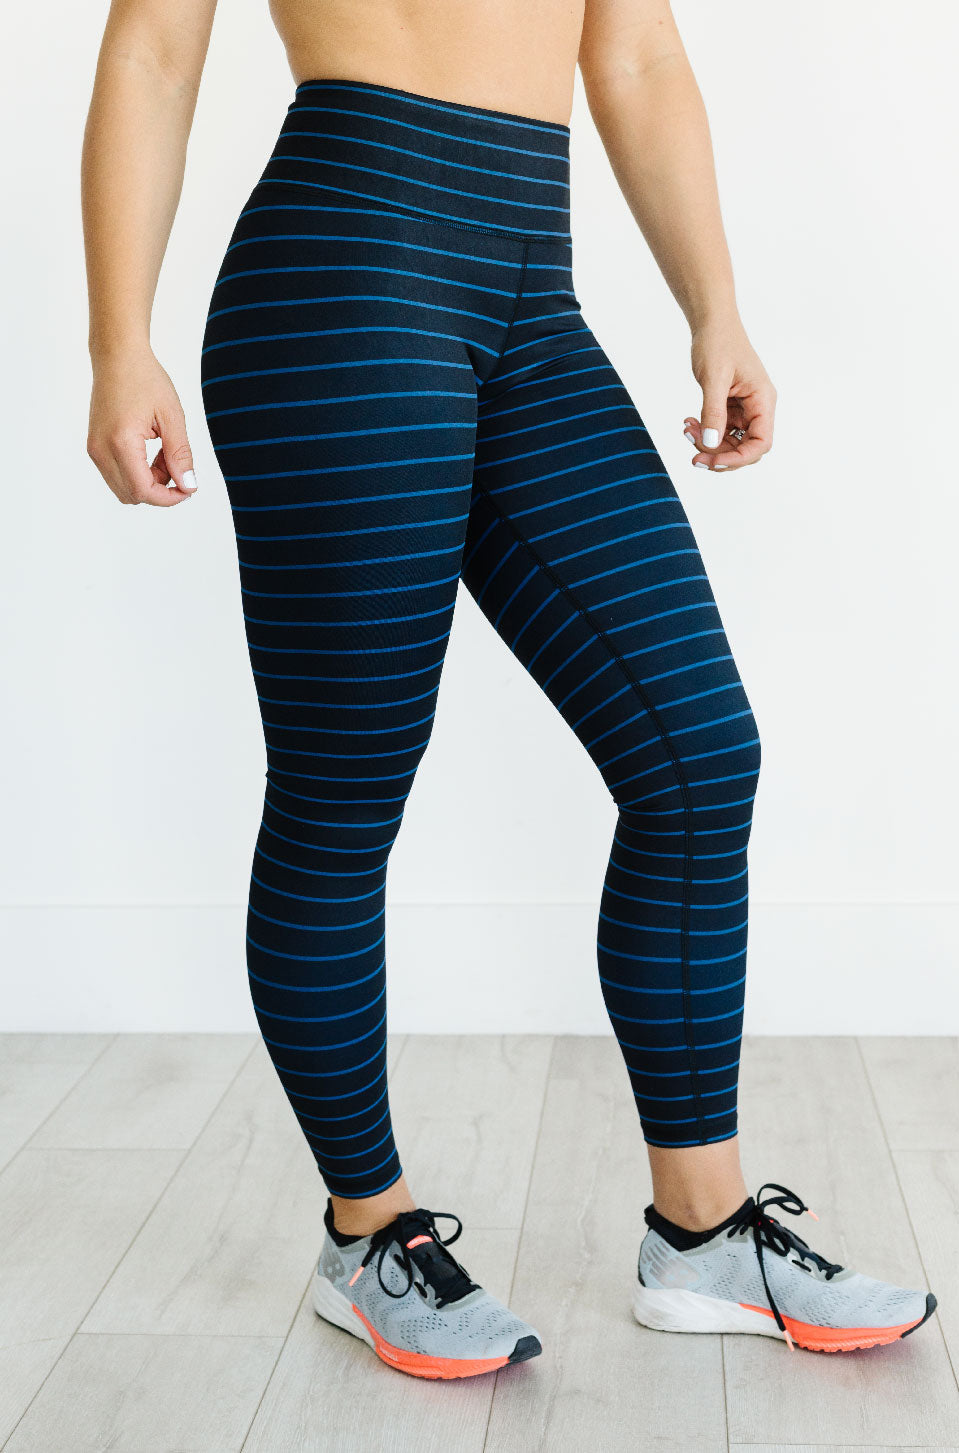 Cobalt Blue and Black Horizontal Stripes Leggings for Women, Strippes  Leggings